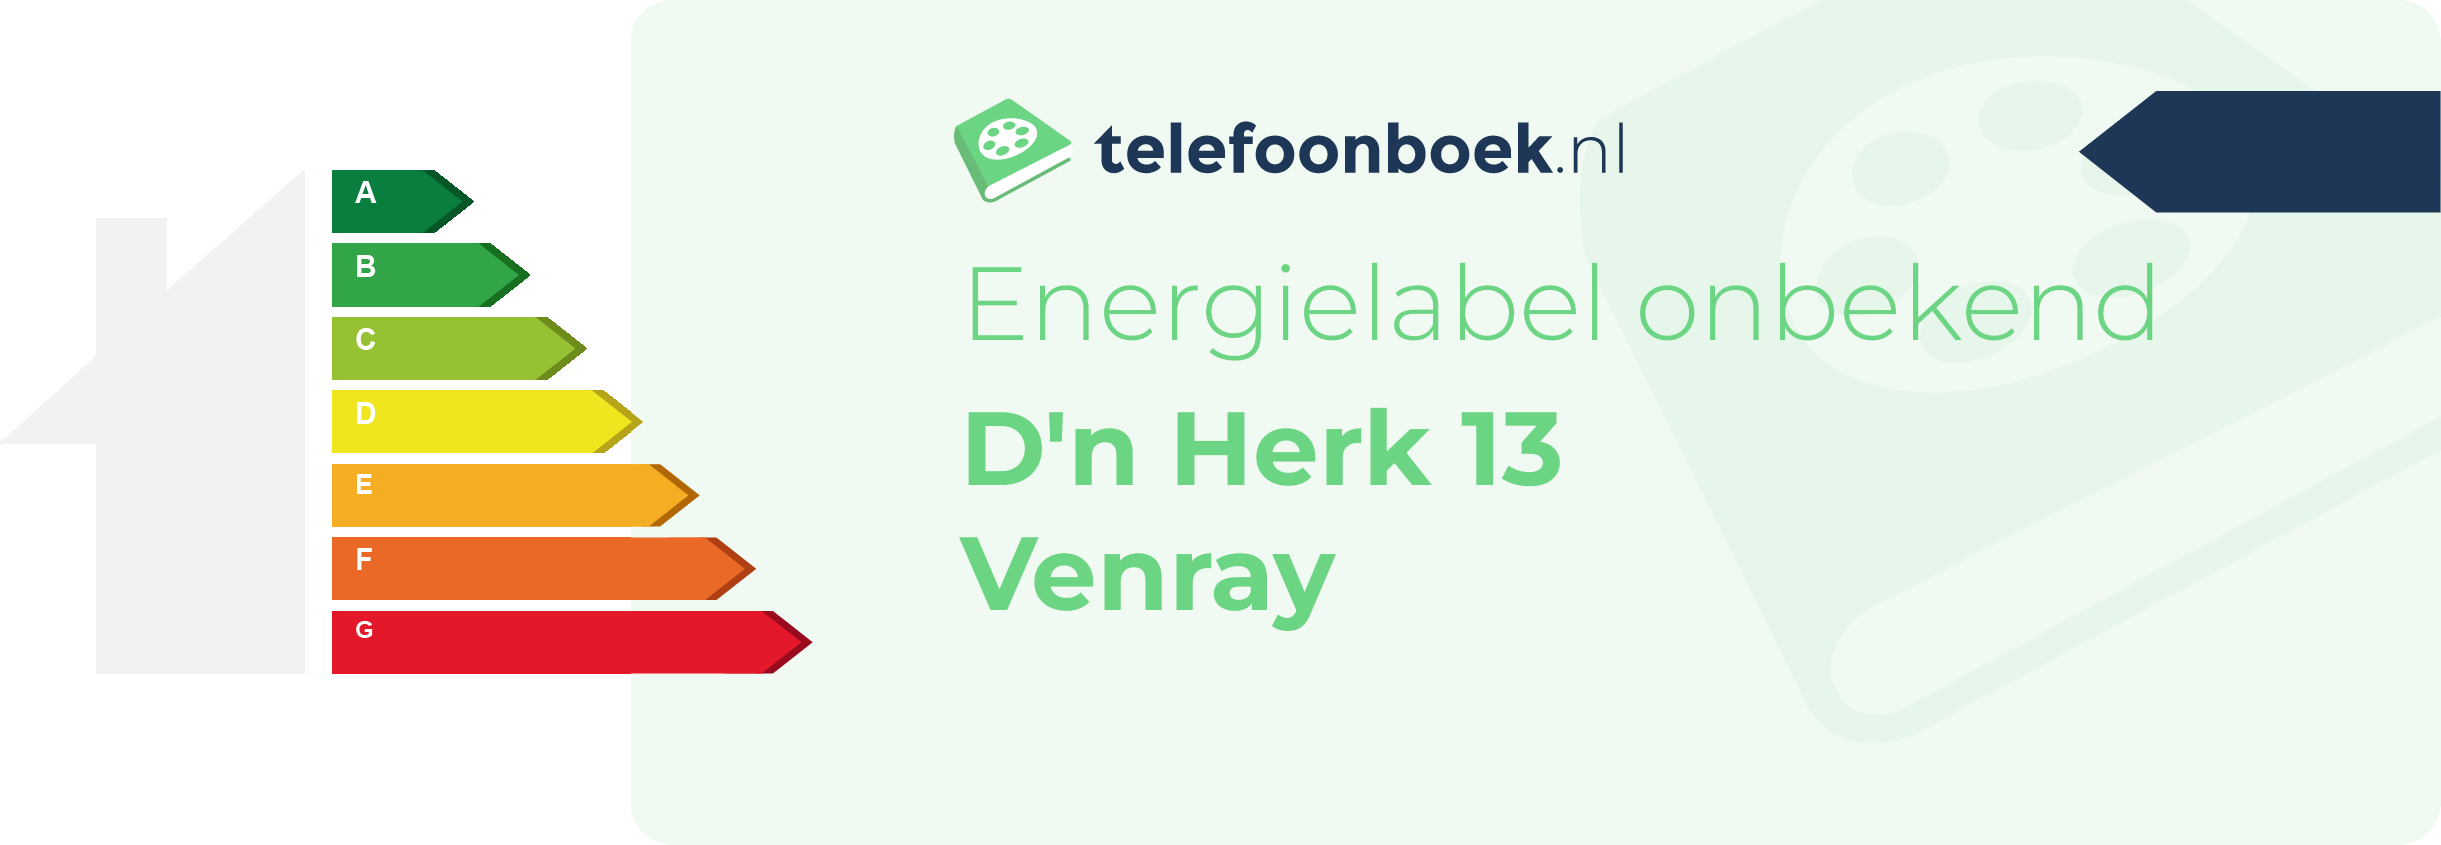 Energielabel D'n Herk 13 Venray